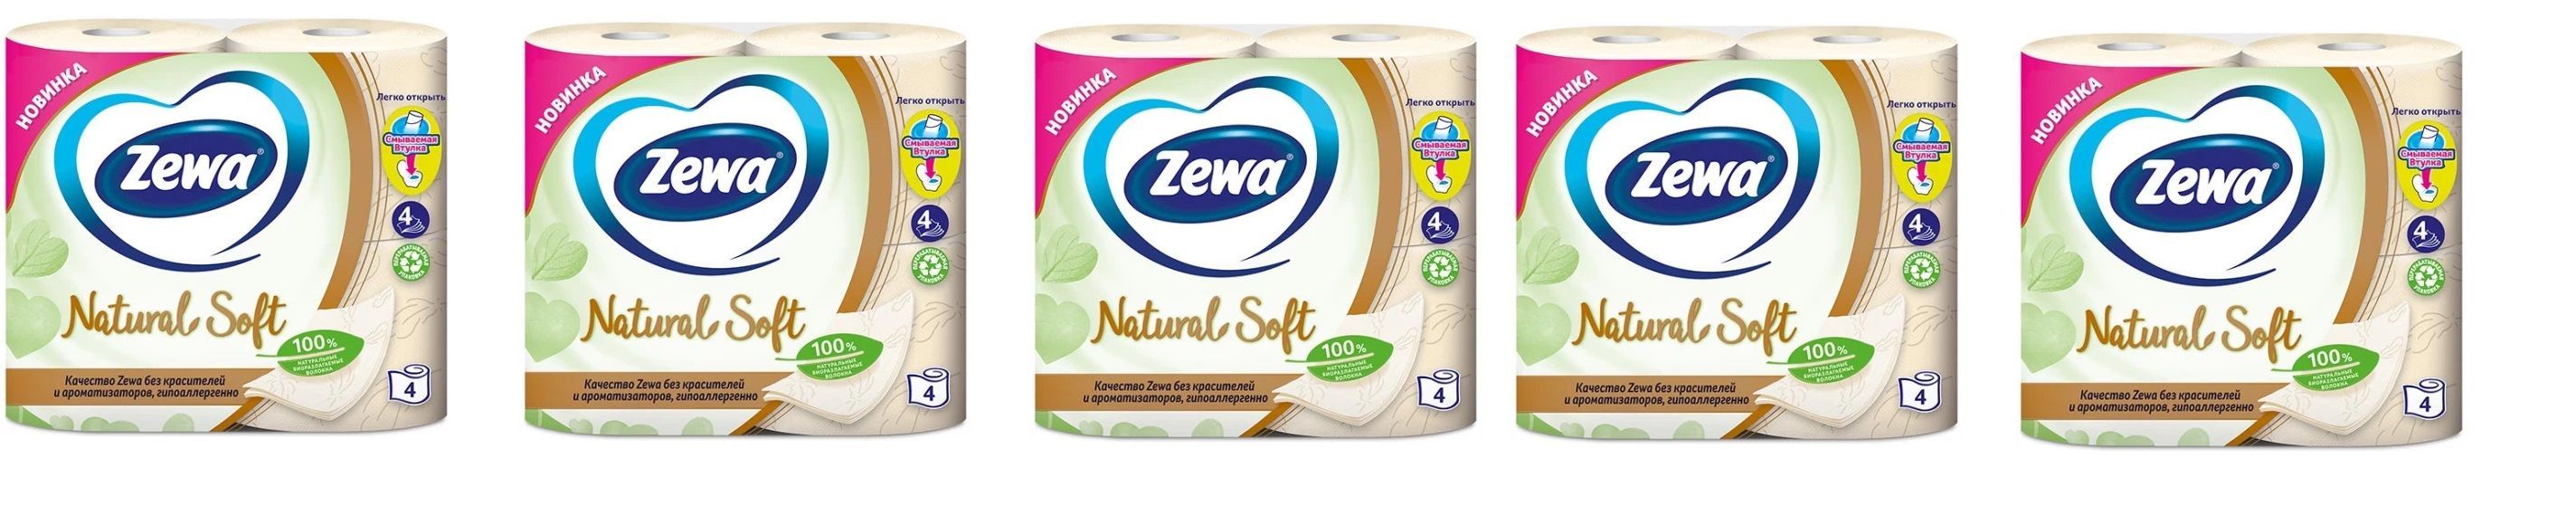 Зева софт блоссом. Zewa natural Comfort платочки. Мягкая игрушка из рекламы Zewa. Zewa декор артикул 3279201. Zewa natural comfort